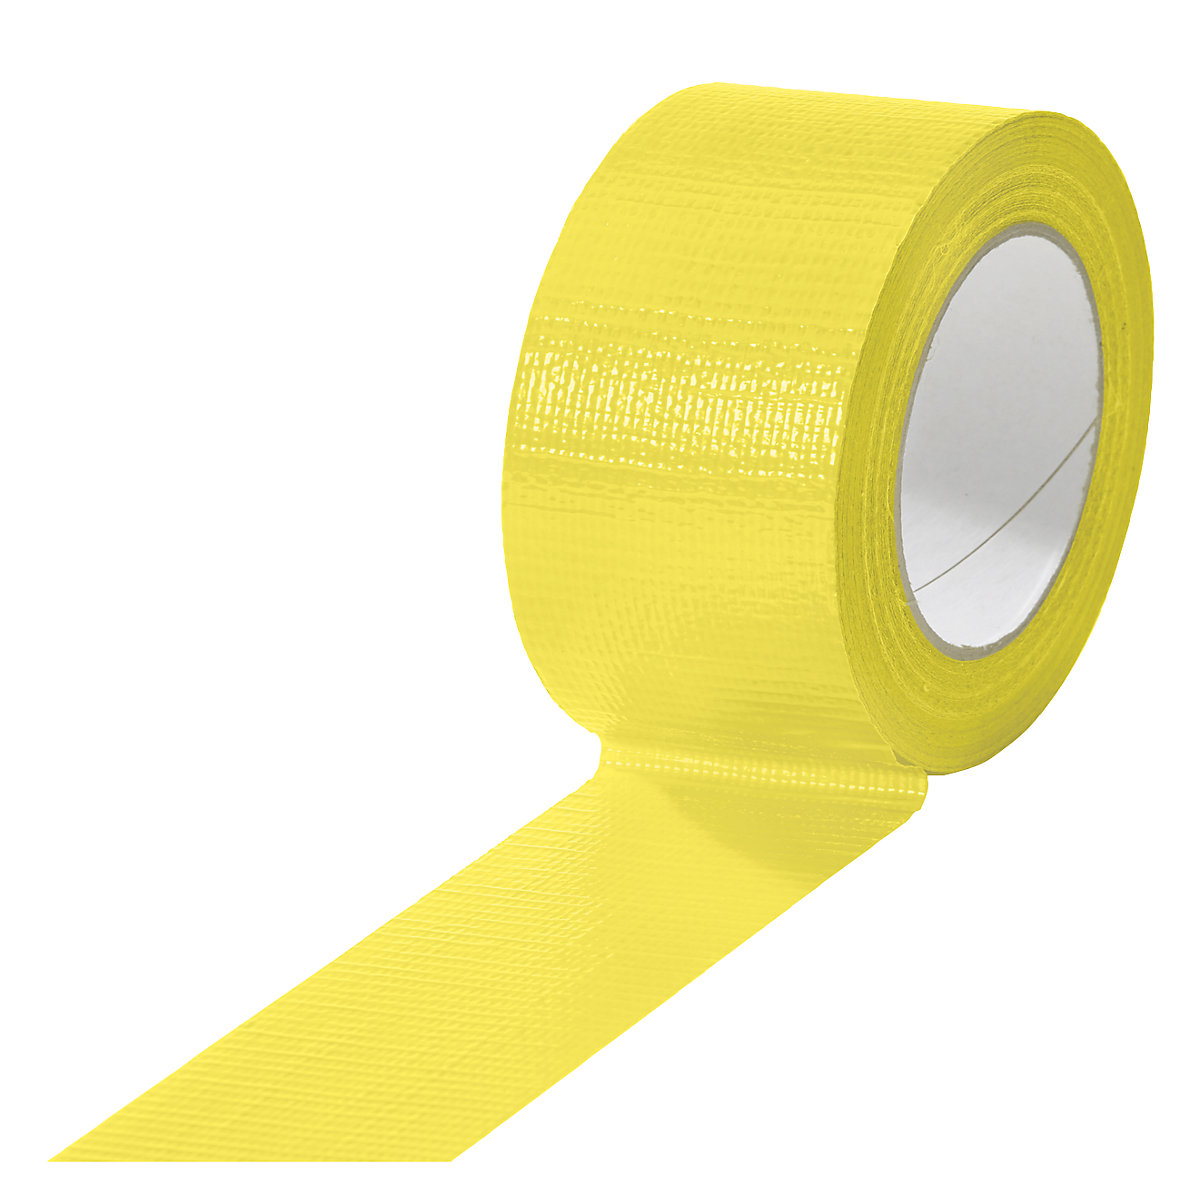 Traka od tkanine, u različitim bojama, pak. 18 rola, u žutoj boji, širina trake 50 mm